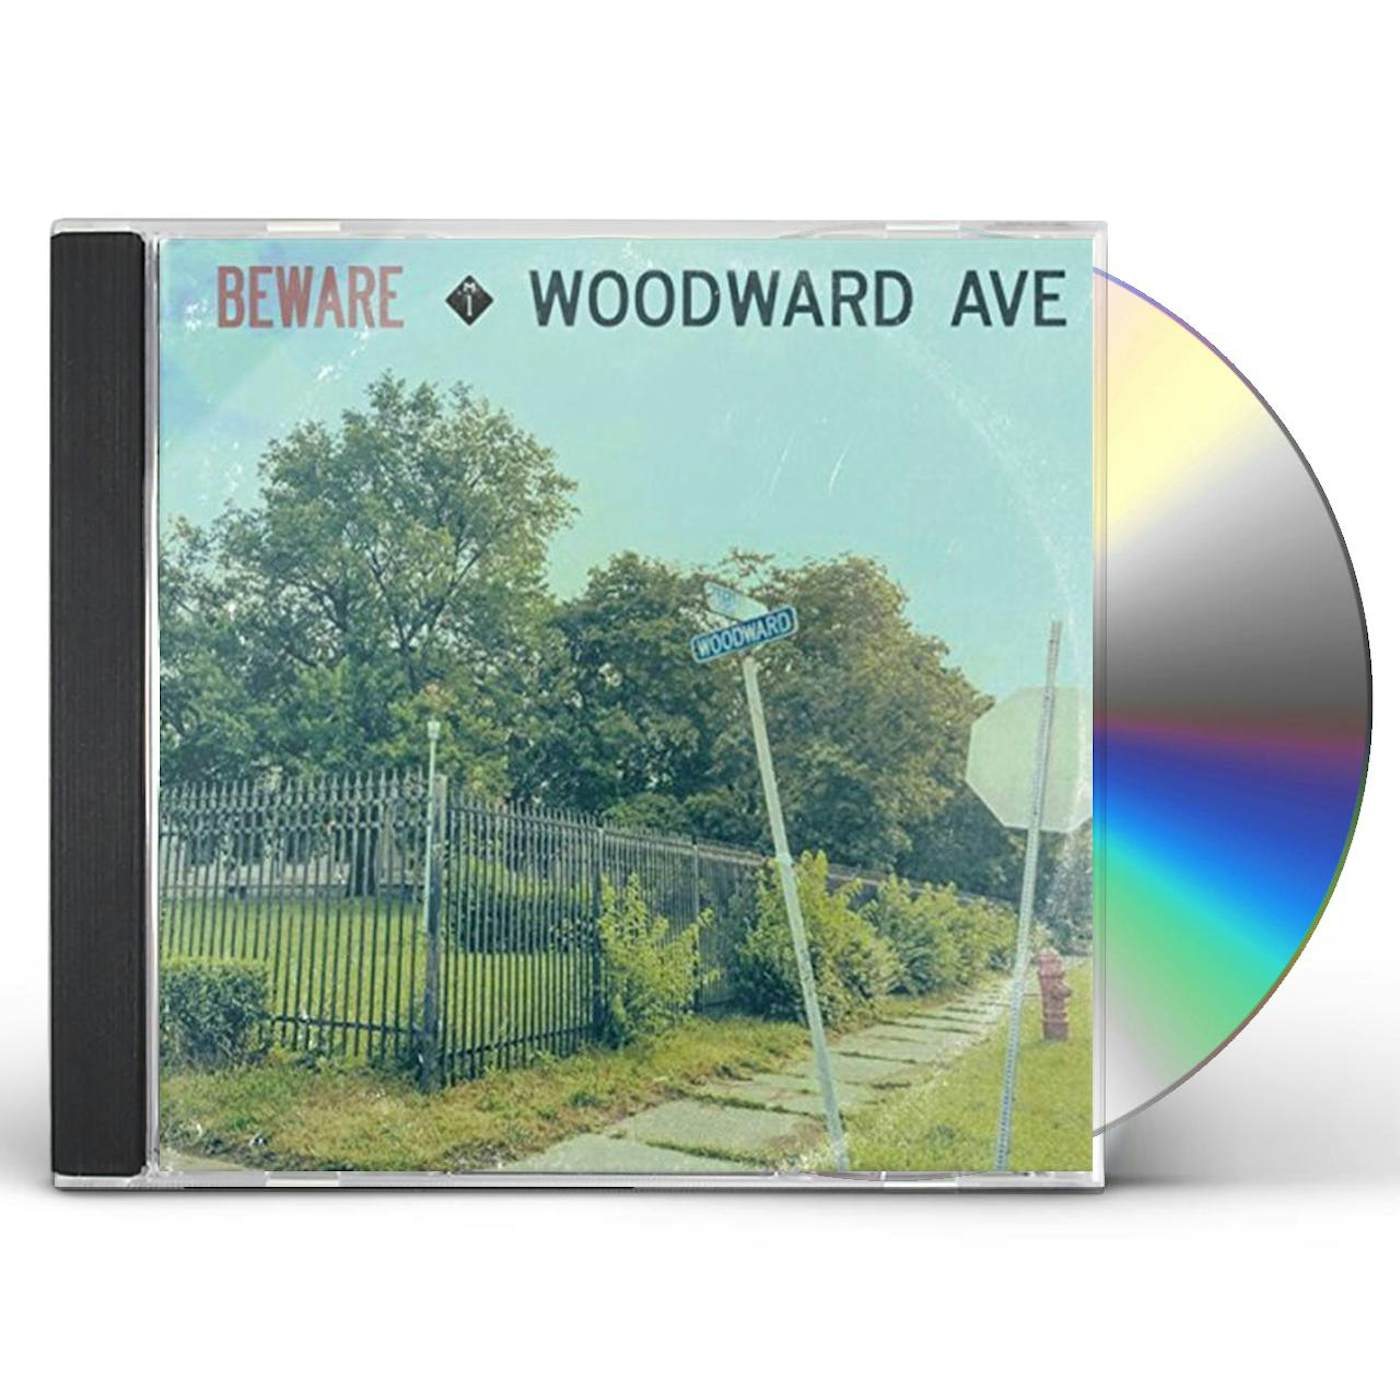 Beware WOODWARD AVE CD